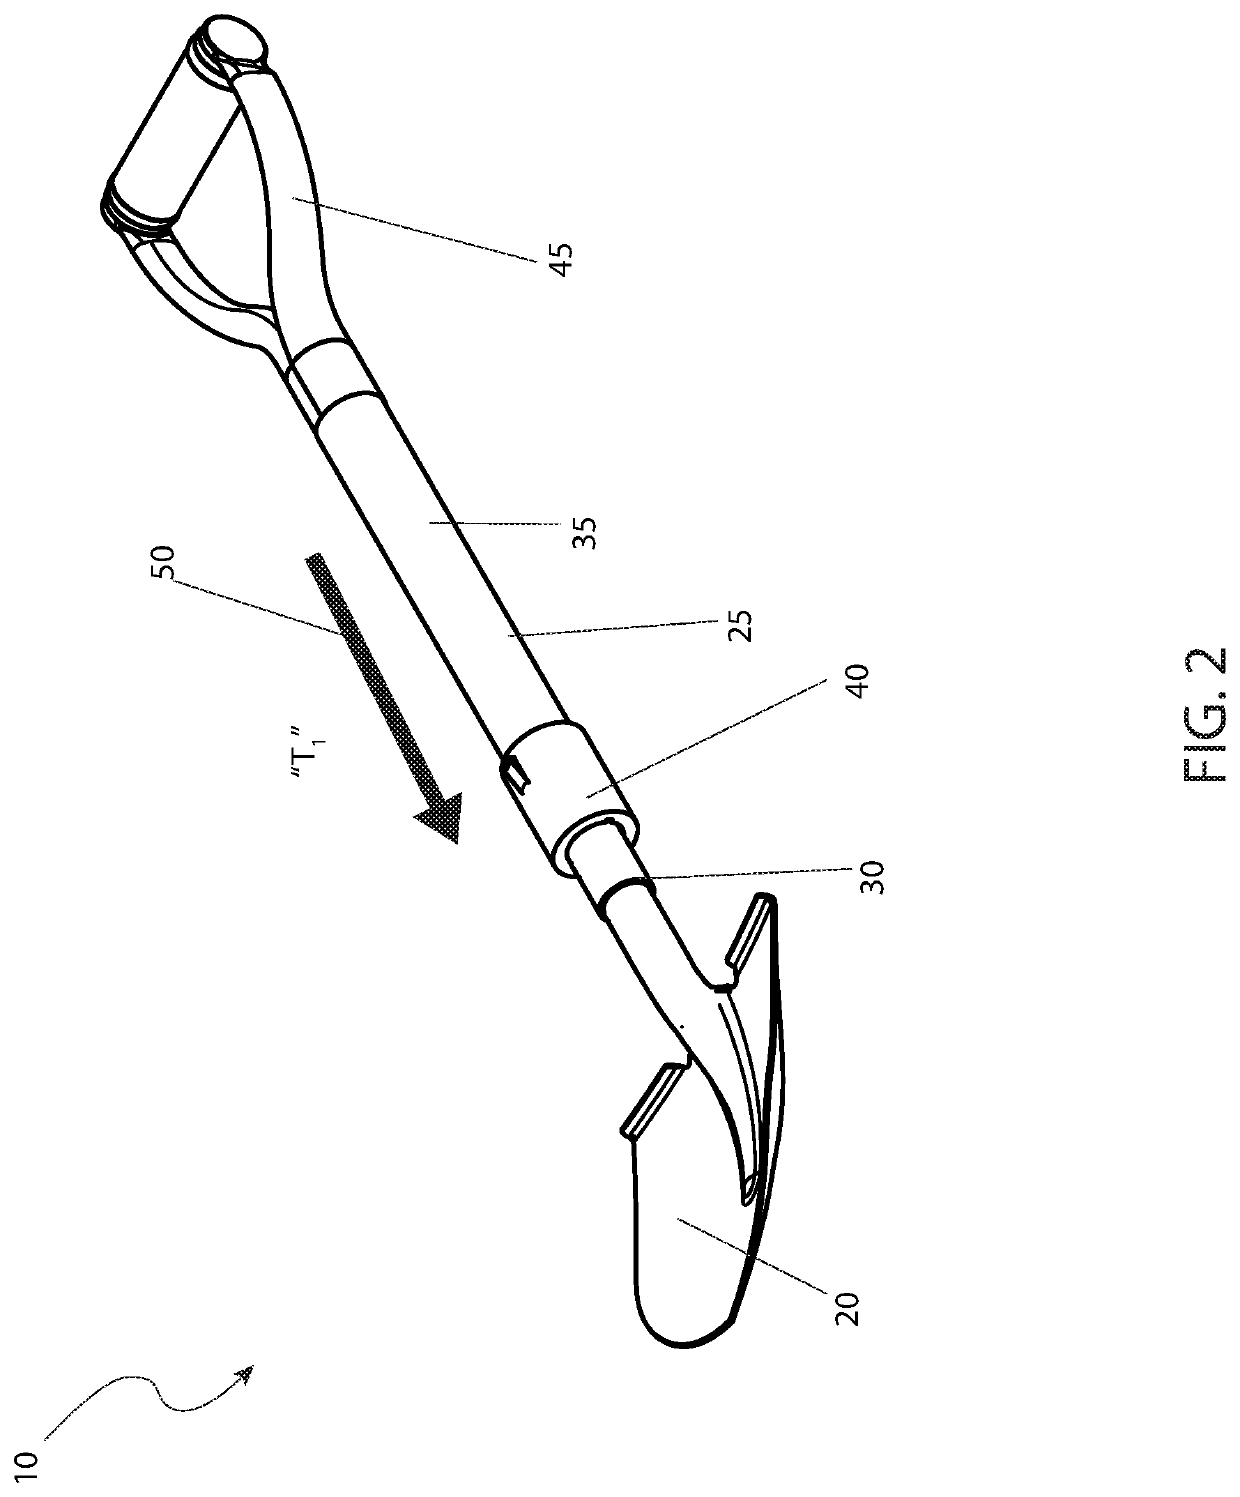 Mutli-tool with length adjustable handle